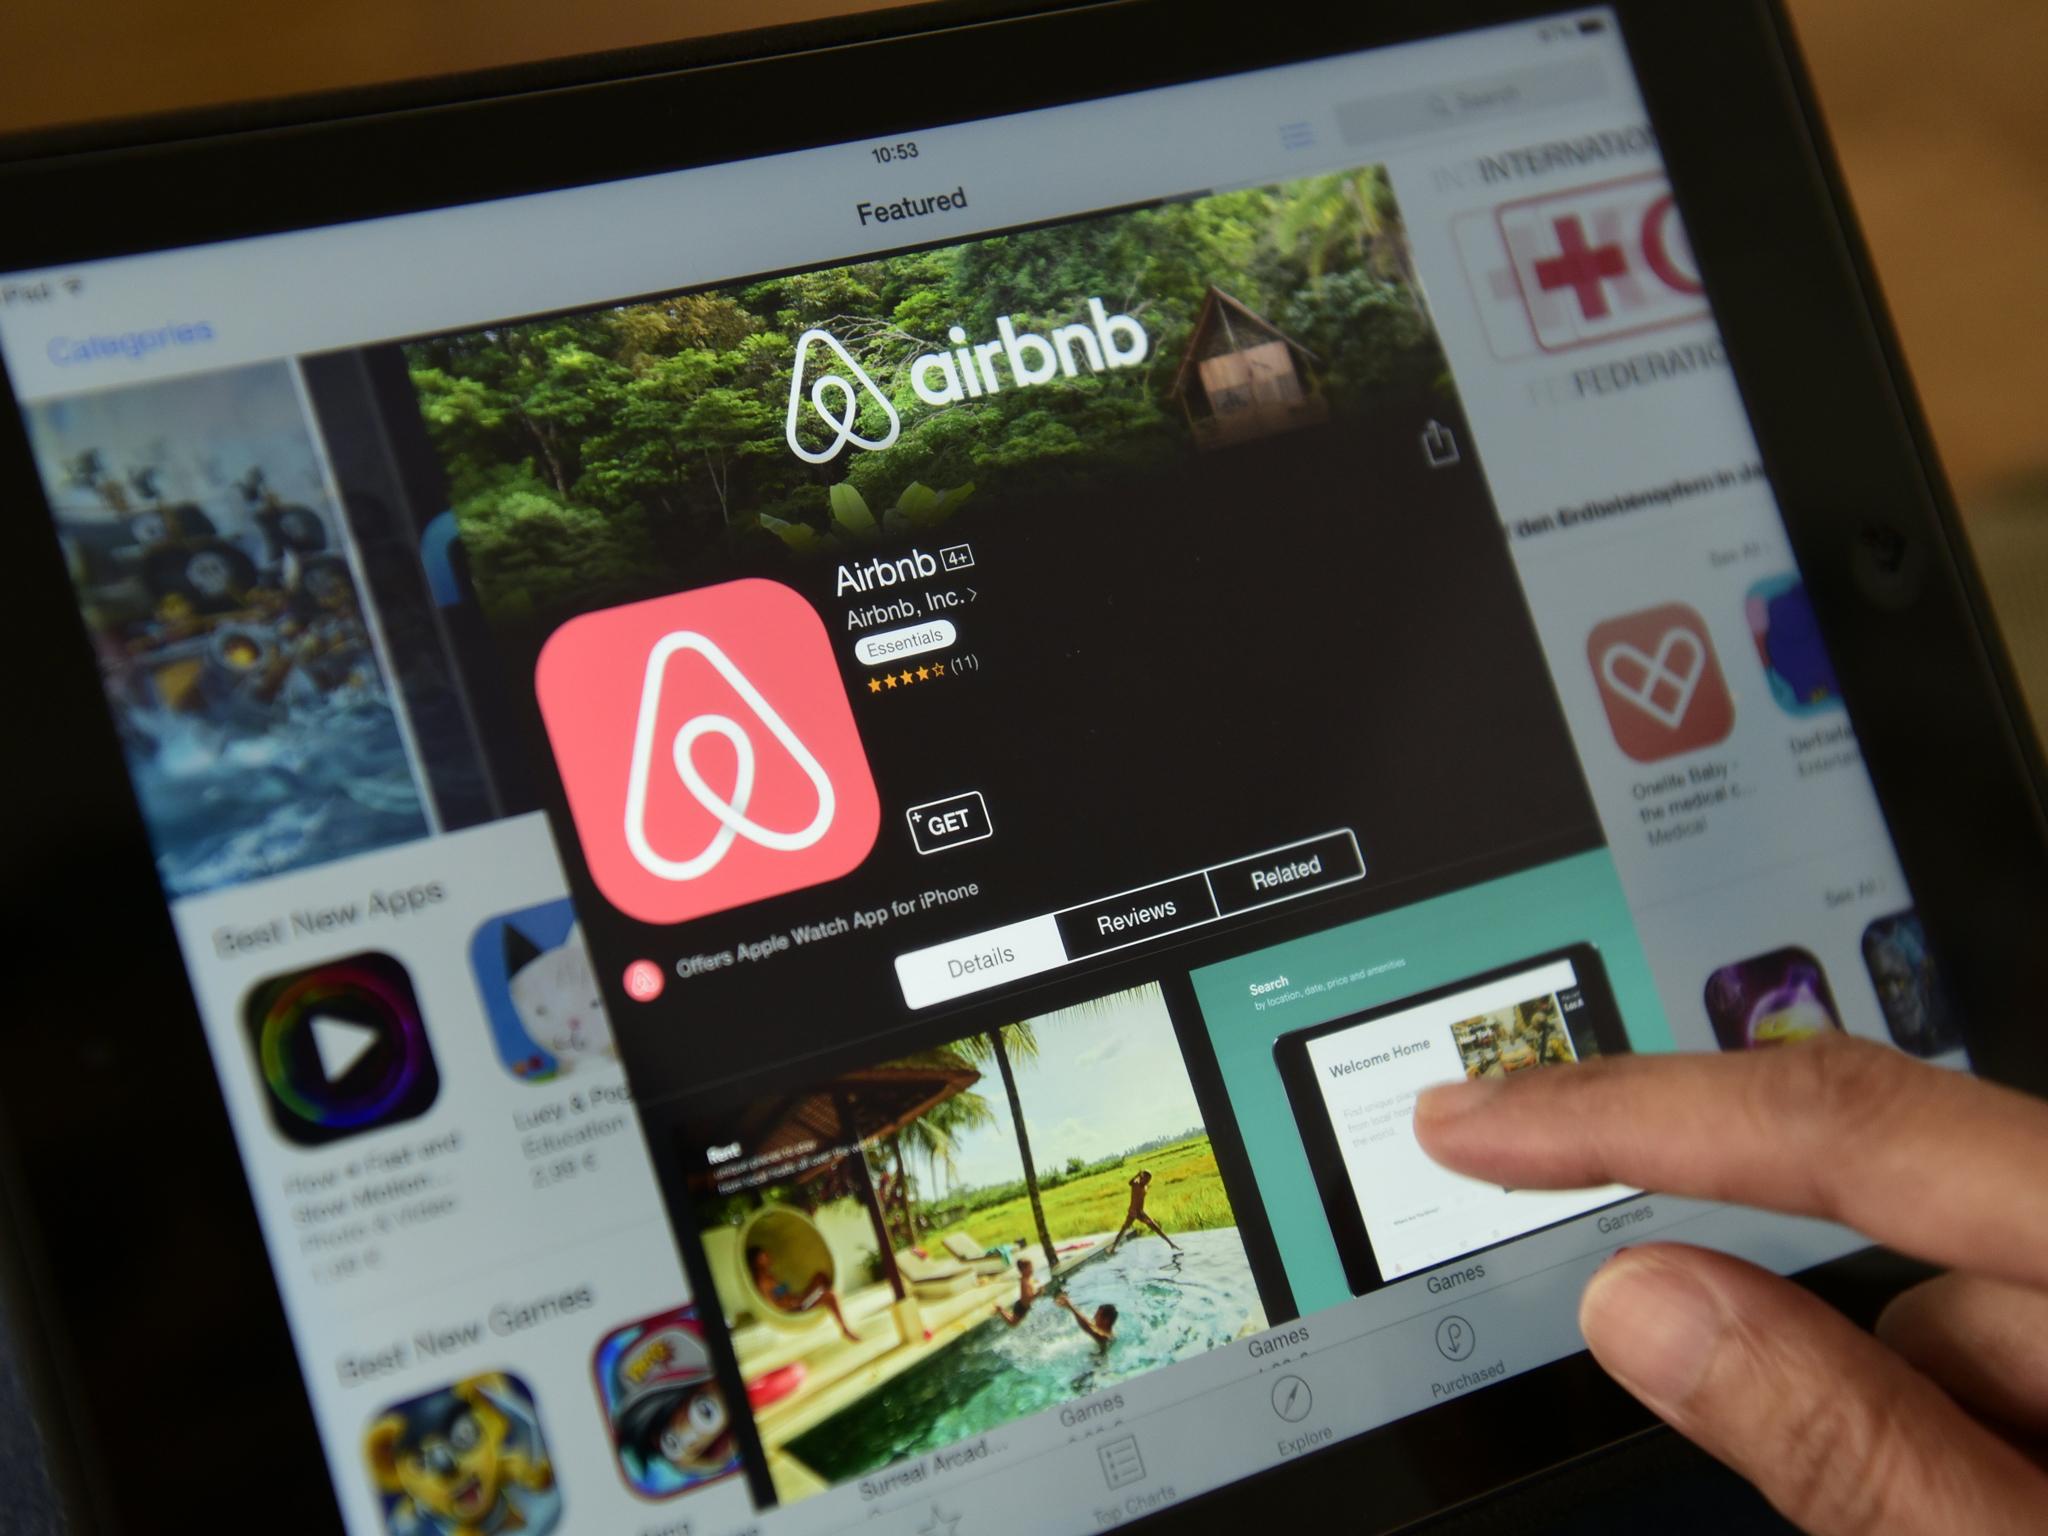 BT 201610 01 Marketing airbnb appp